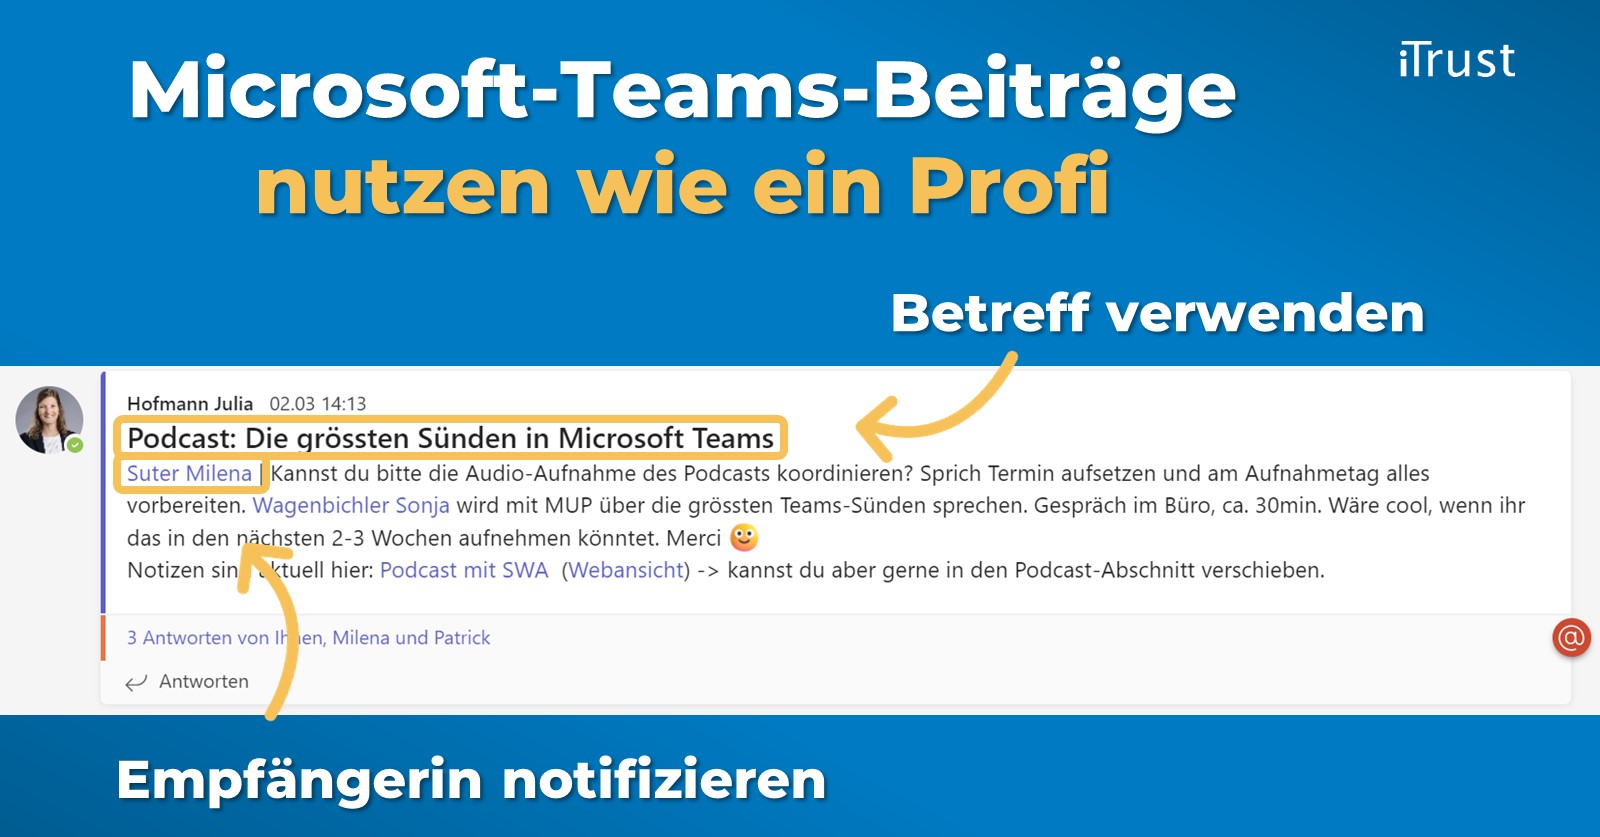 Microsoft-Teams-Beiträge nutzen wie ein Profi - zwei Beispiele